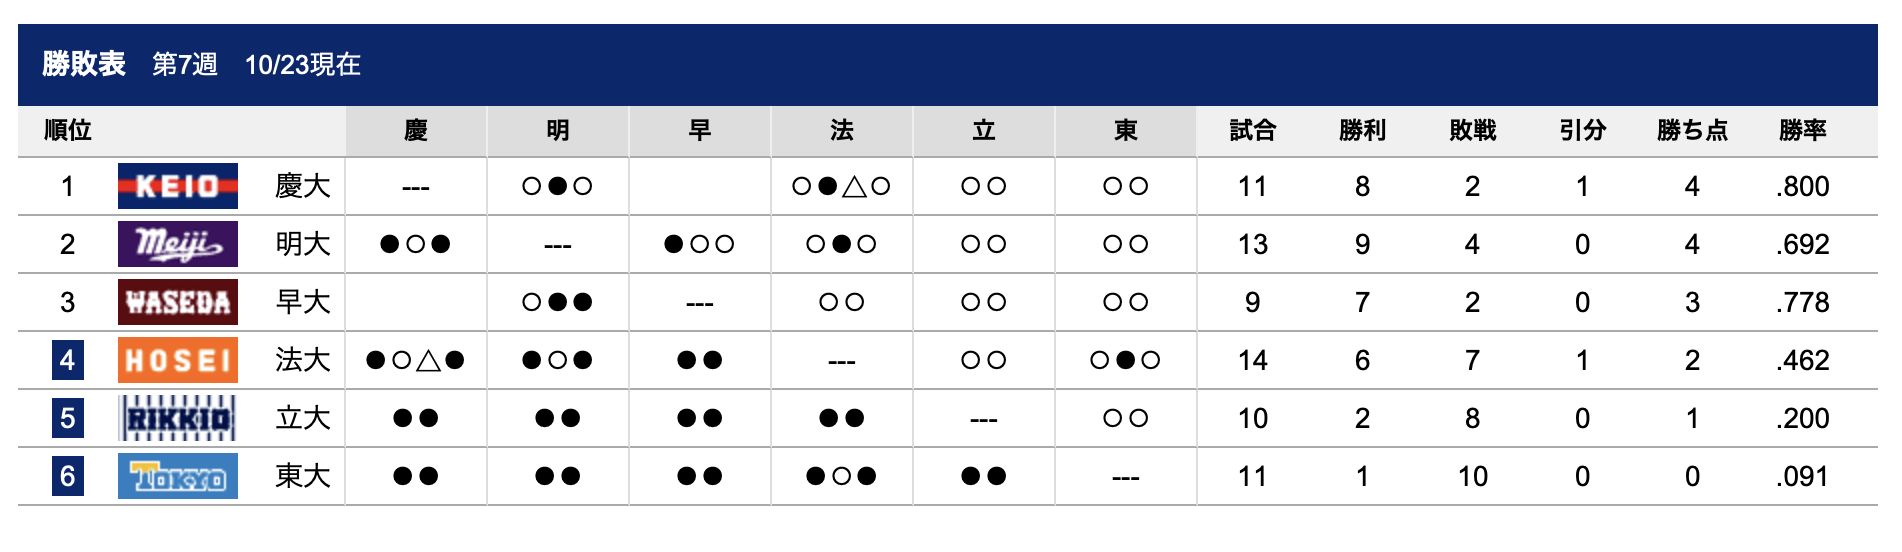 10/23時点での勝敗表(Tokyo Big6 Baseball Leagueより)